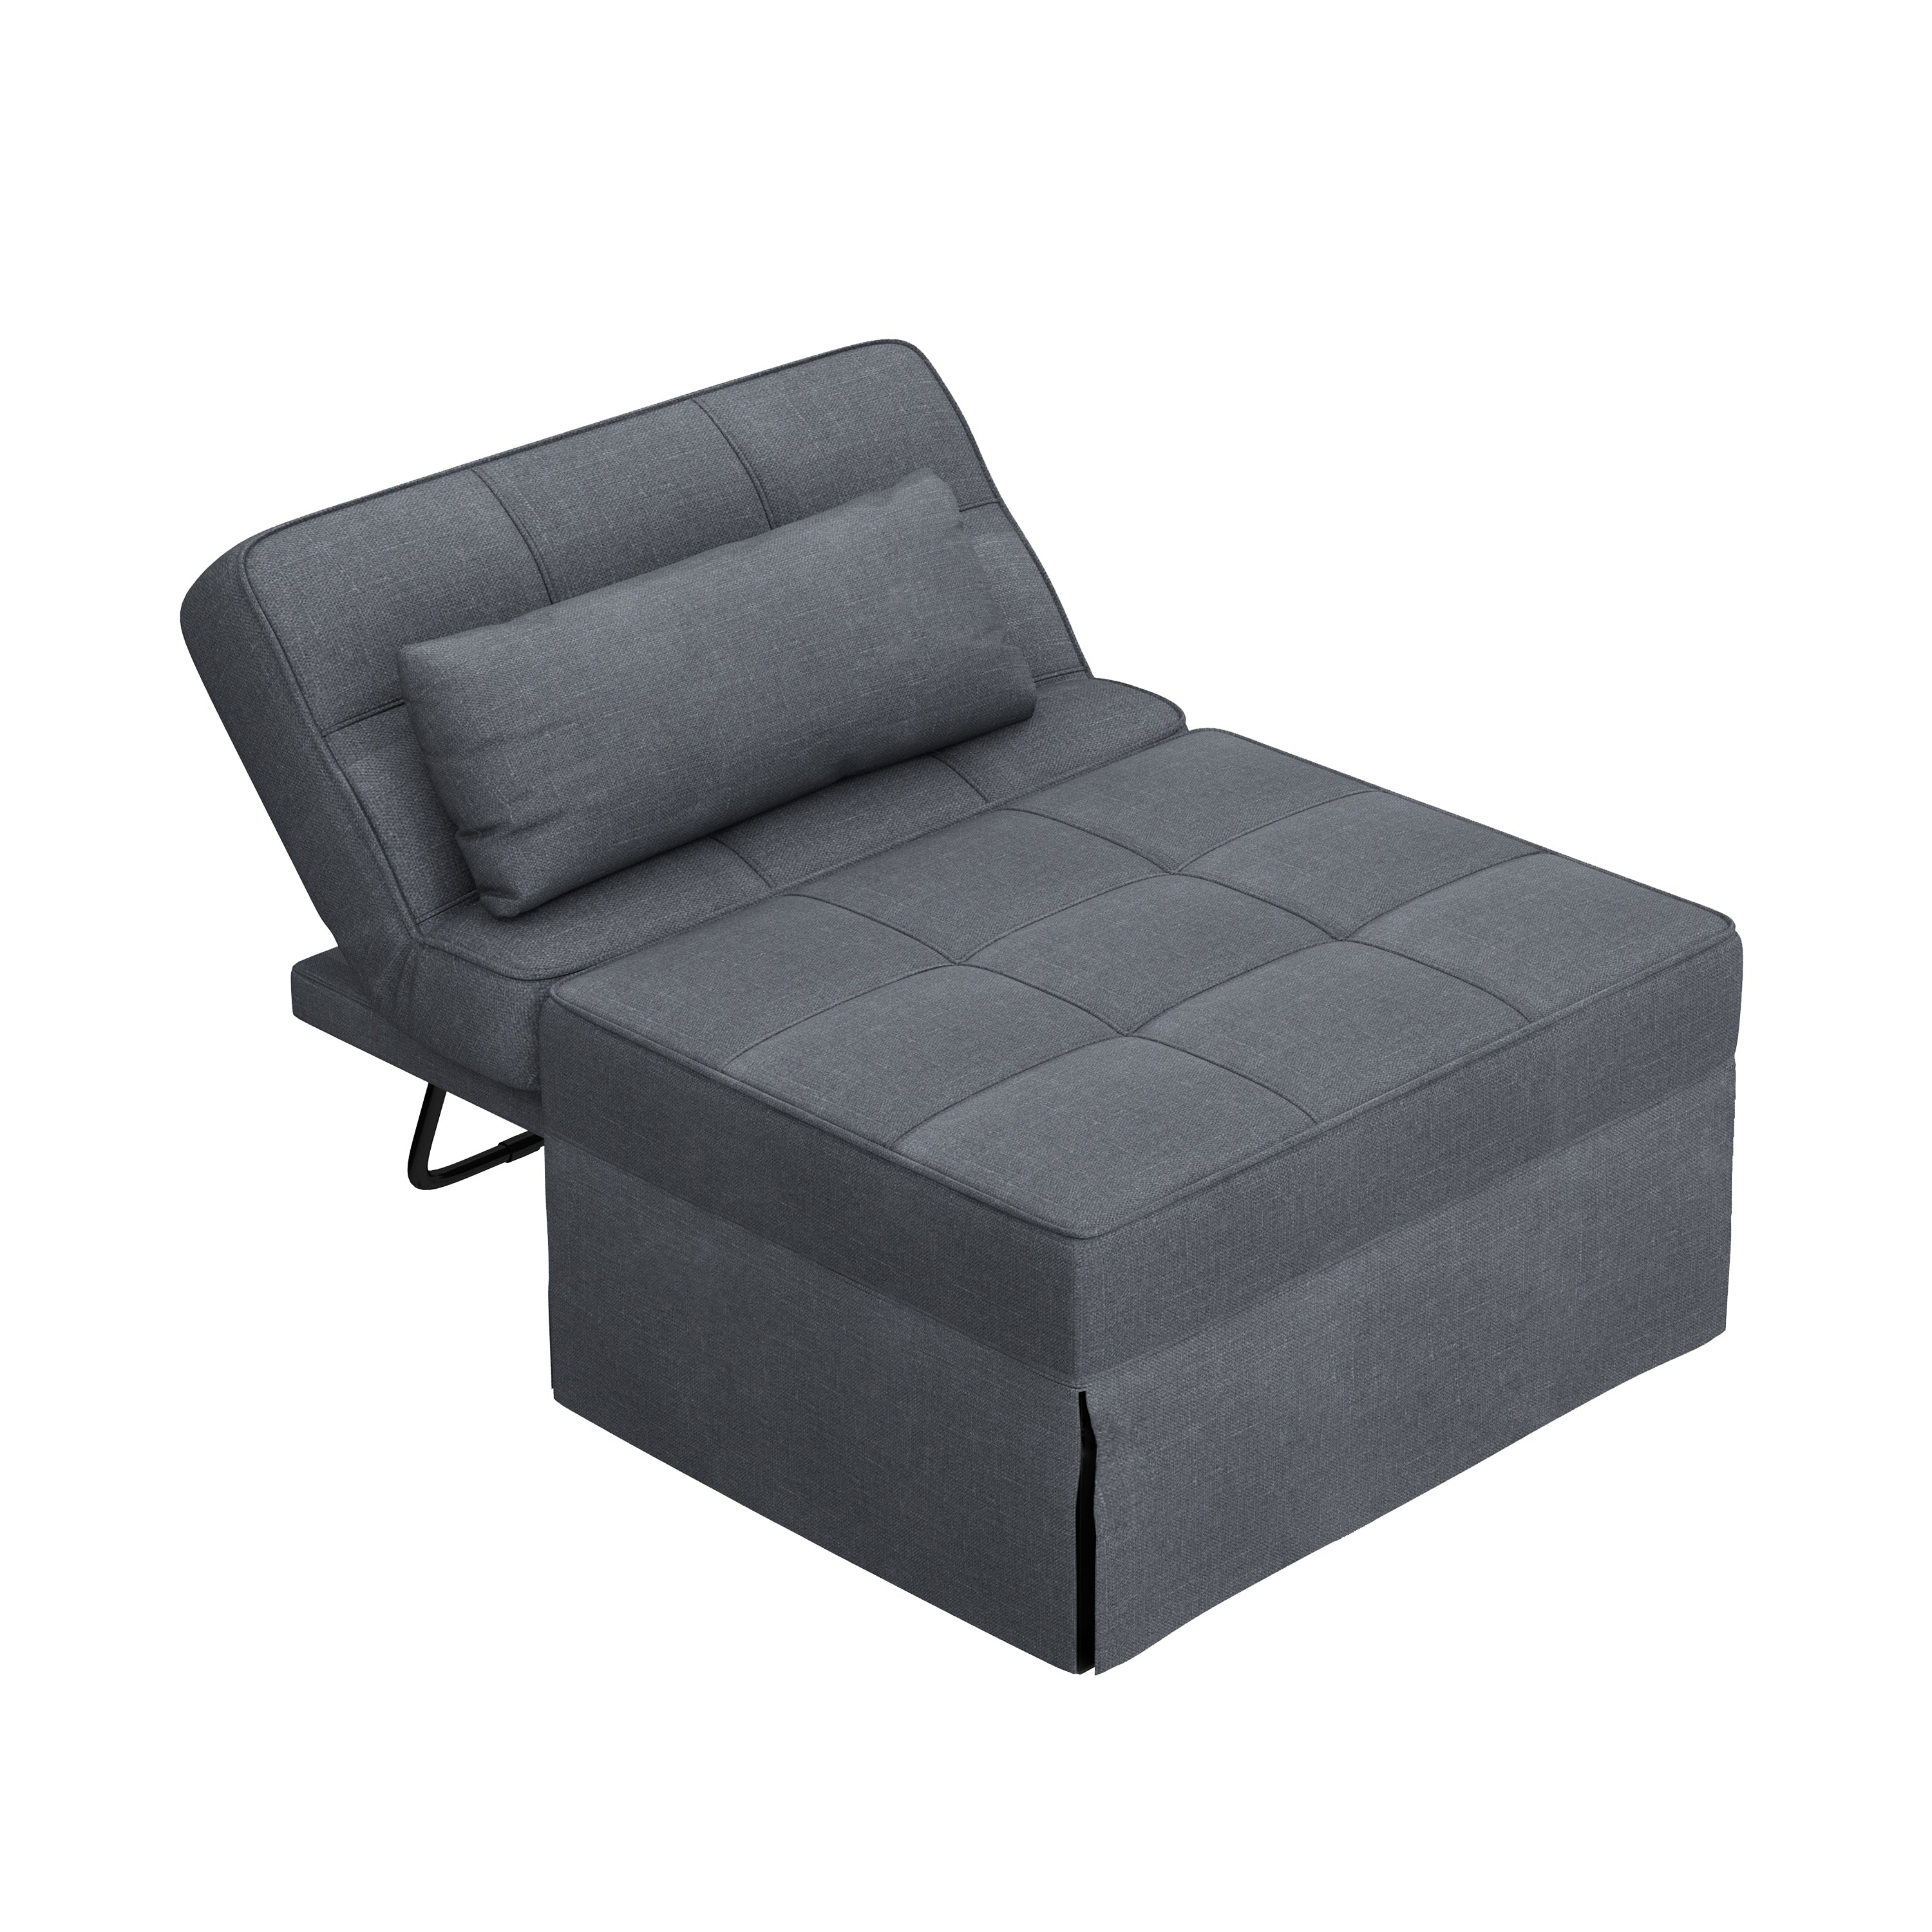 Luma Dark Gray Linen Convertible Sleeper Bed, Lounge Chair, Ottoman